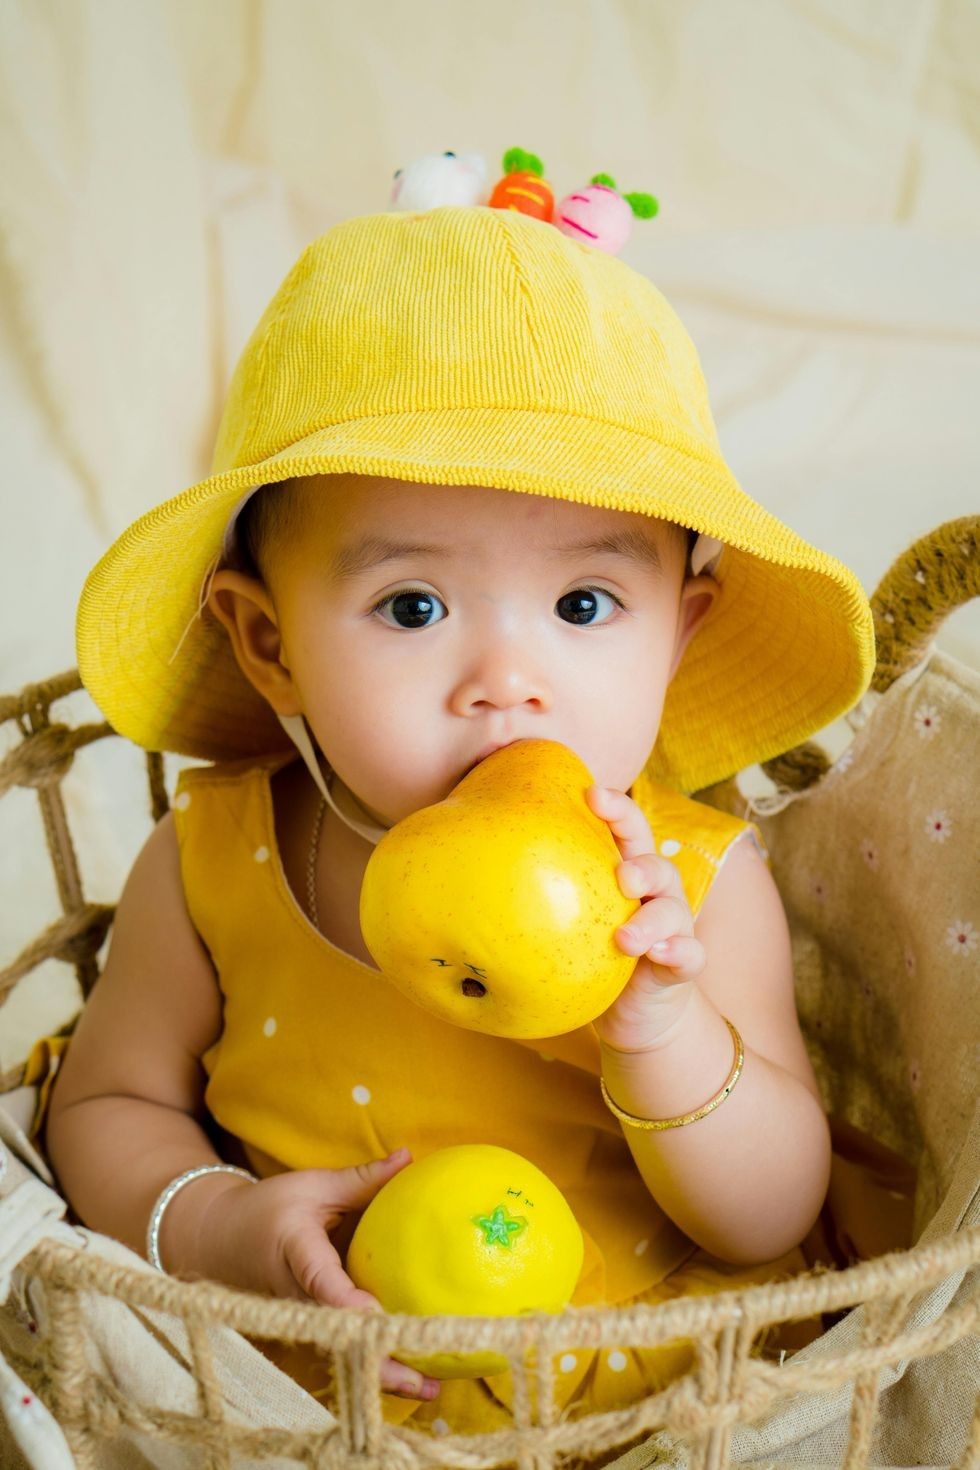 little baby holding a lemon